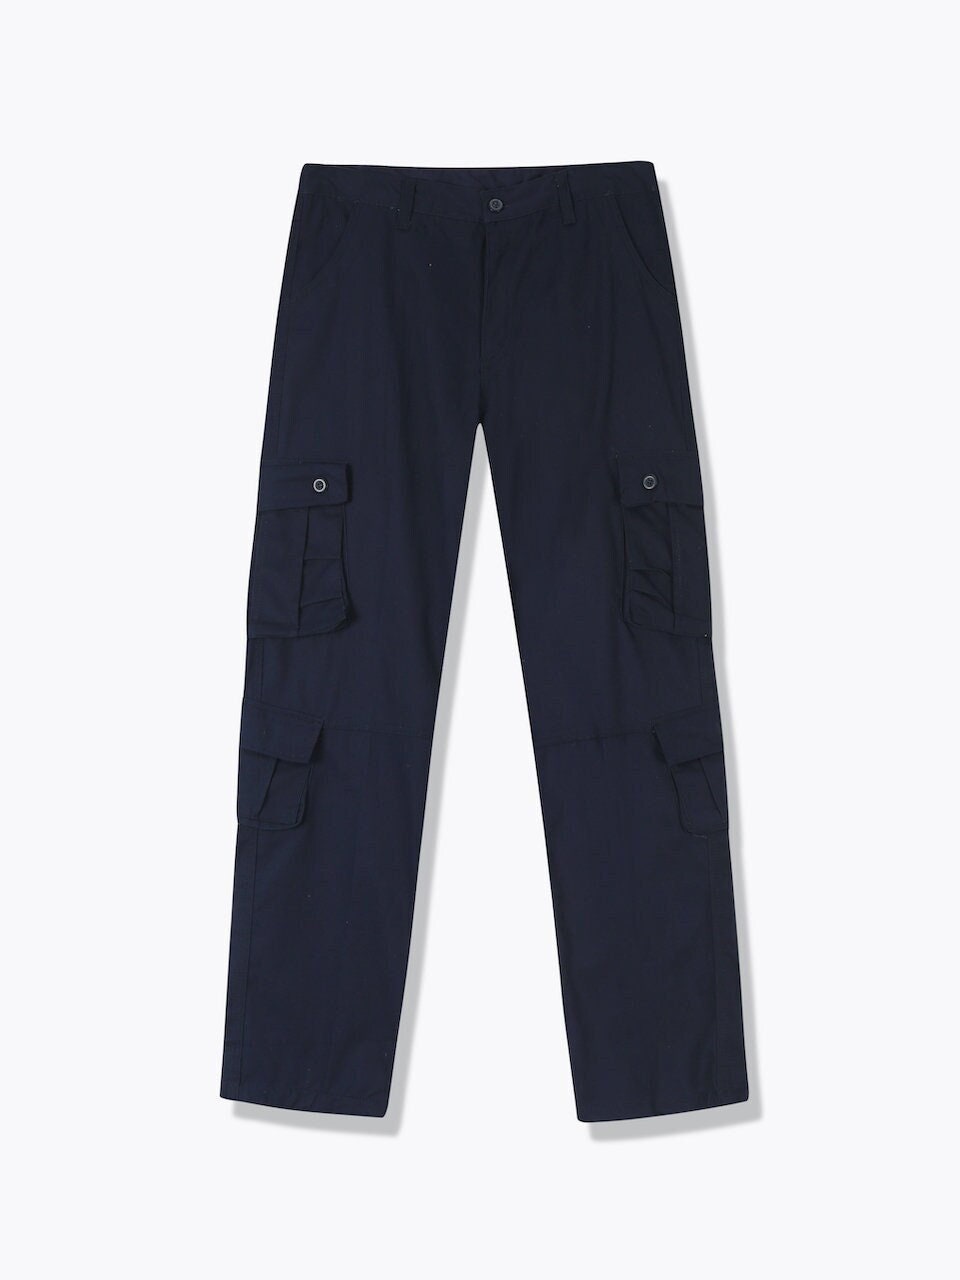 Navy Pants Pocket 